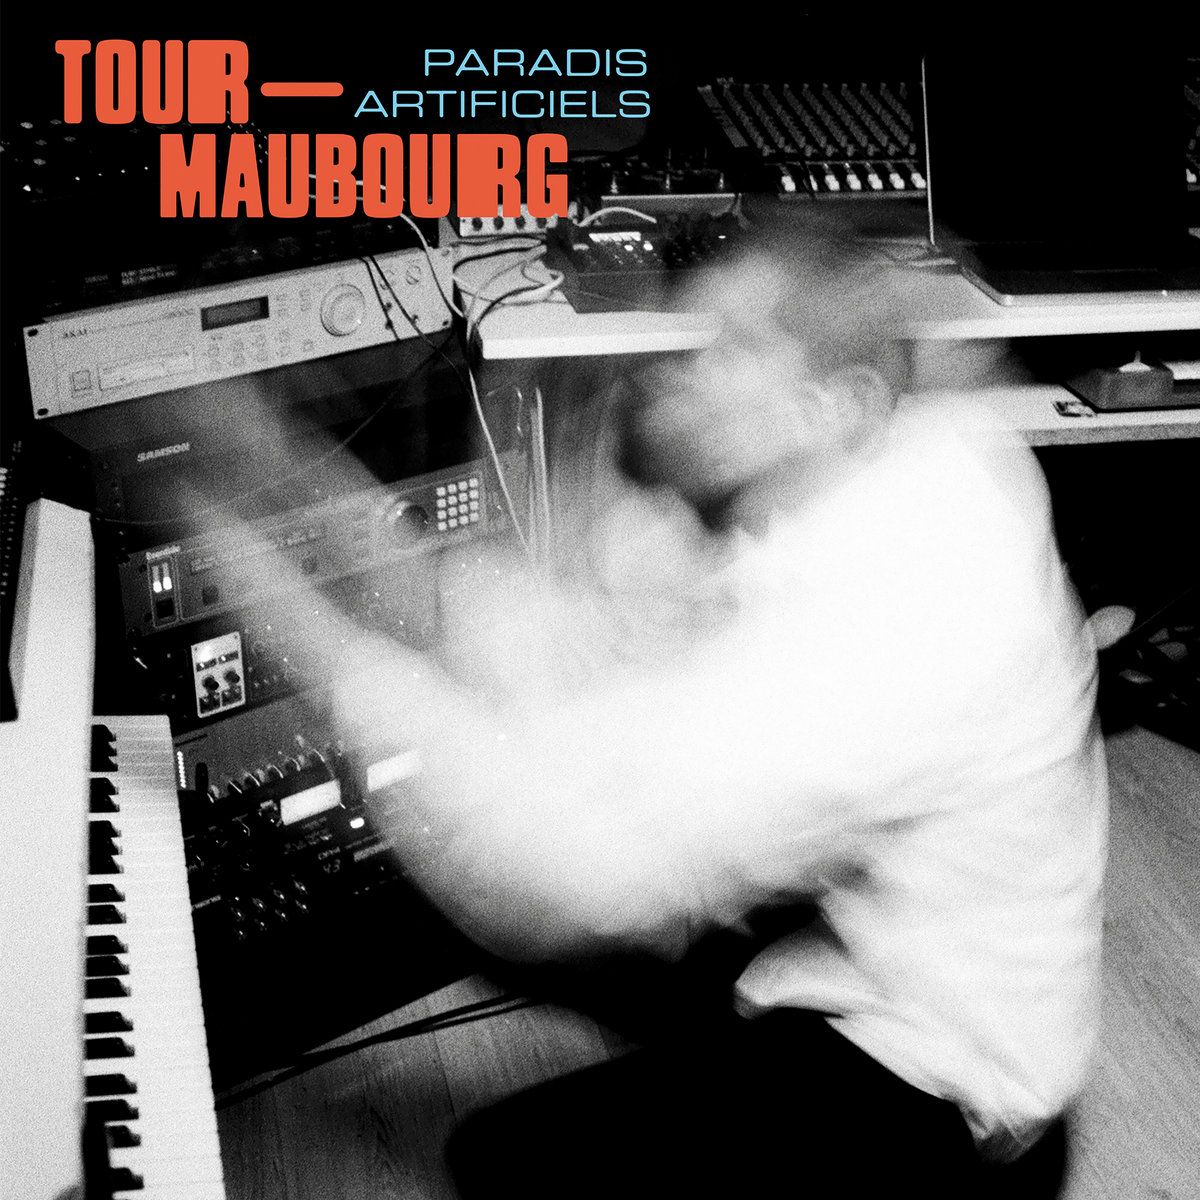 Tour-Maubourg/PARADIS ARTIFICIELS LP